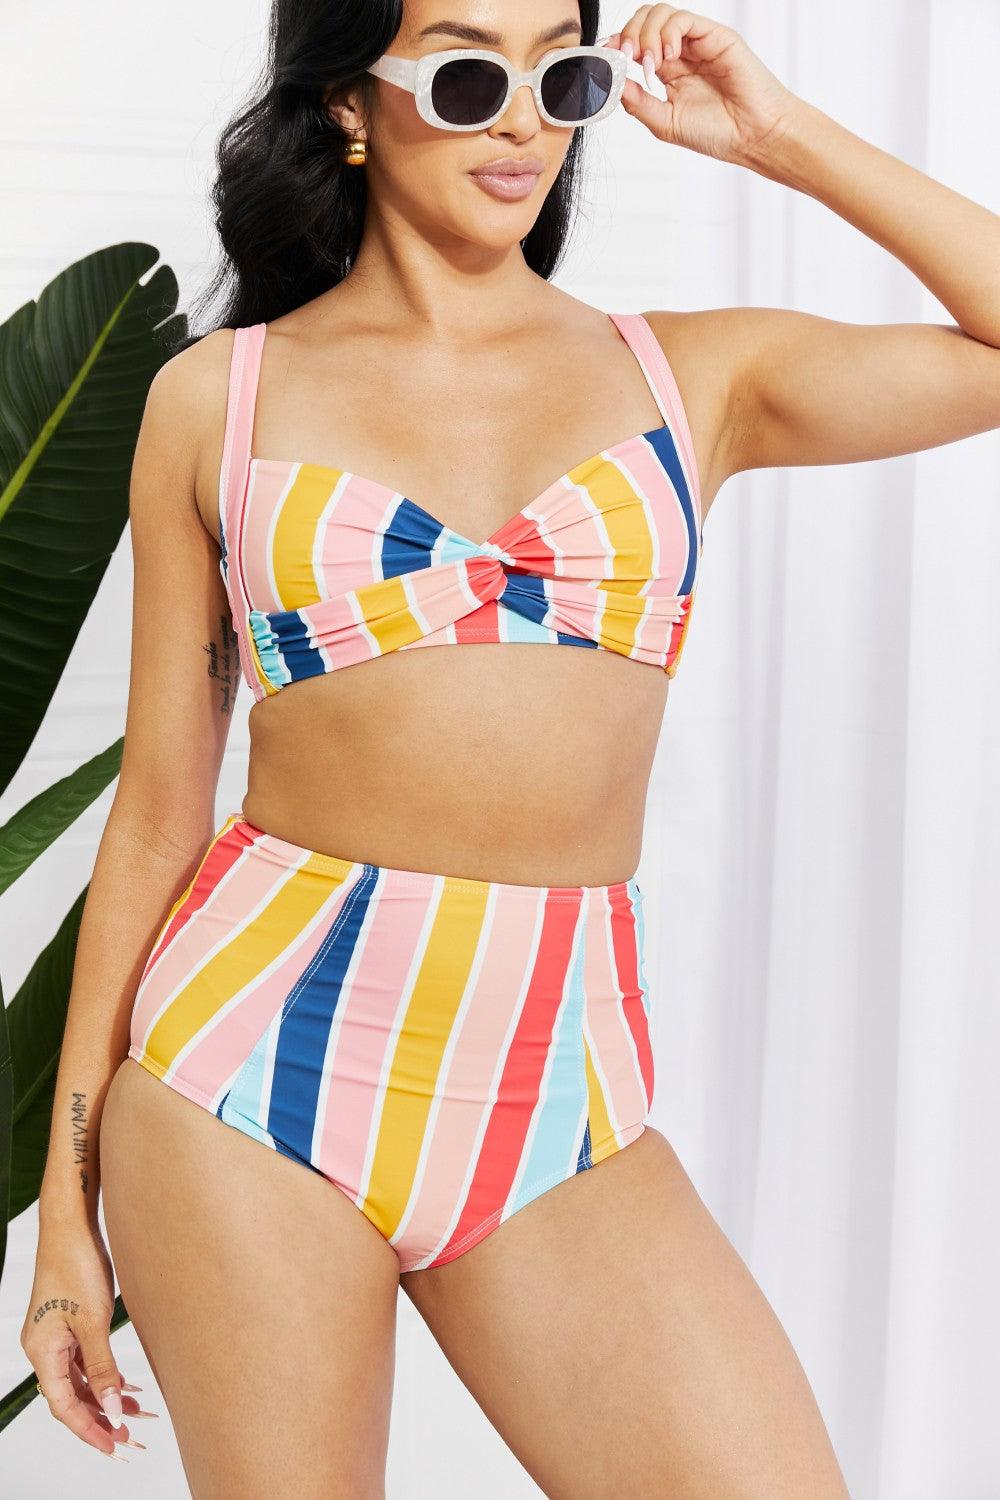 Marina West Swim Take A Dip Twist High-Rise Bikini in Stripe - Glamorous Boutique USA L.L.C.